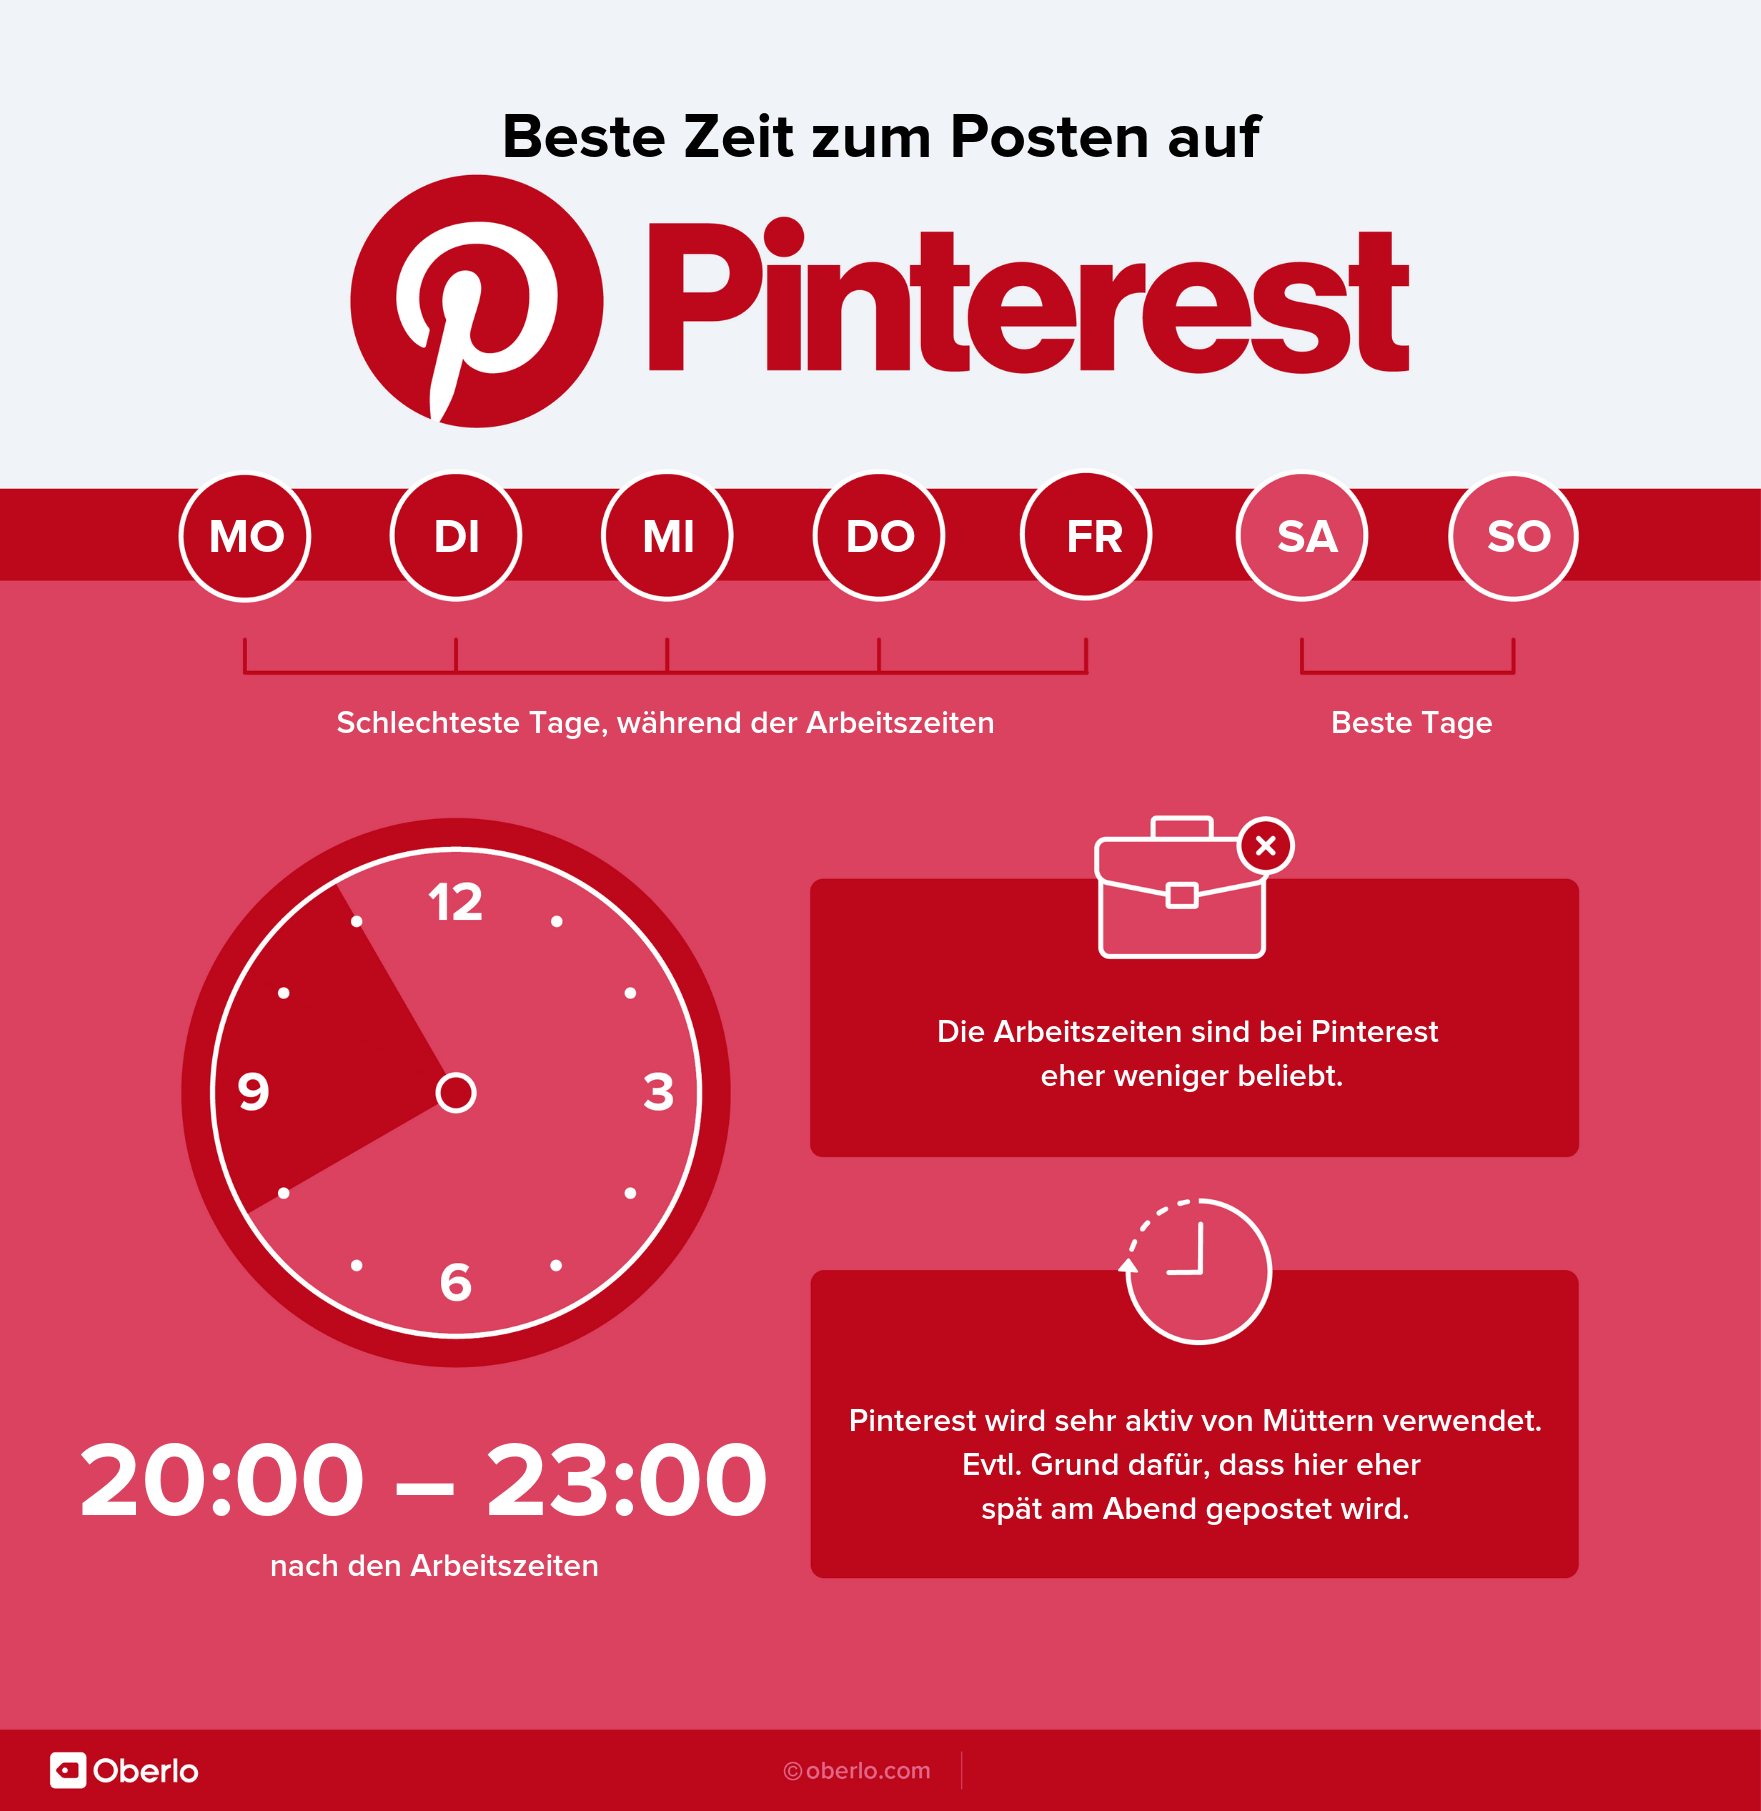 Beste Zeit zum Posten - Pinterest Infografik